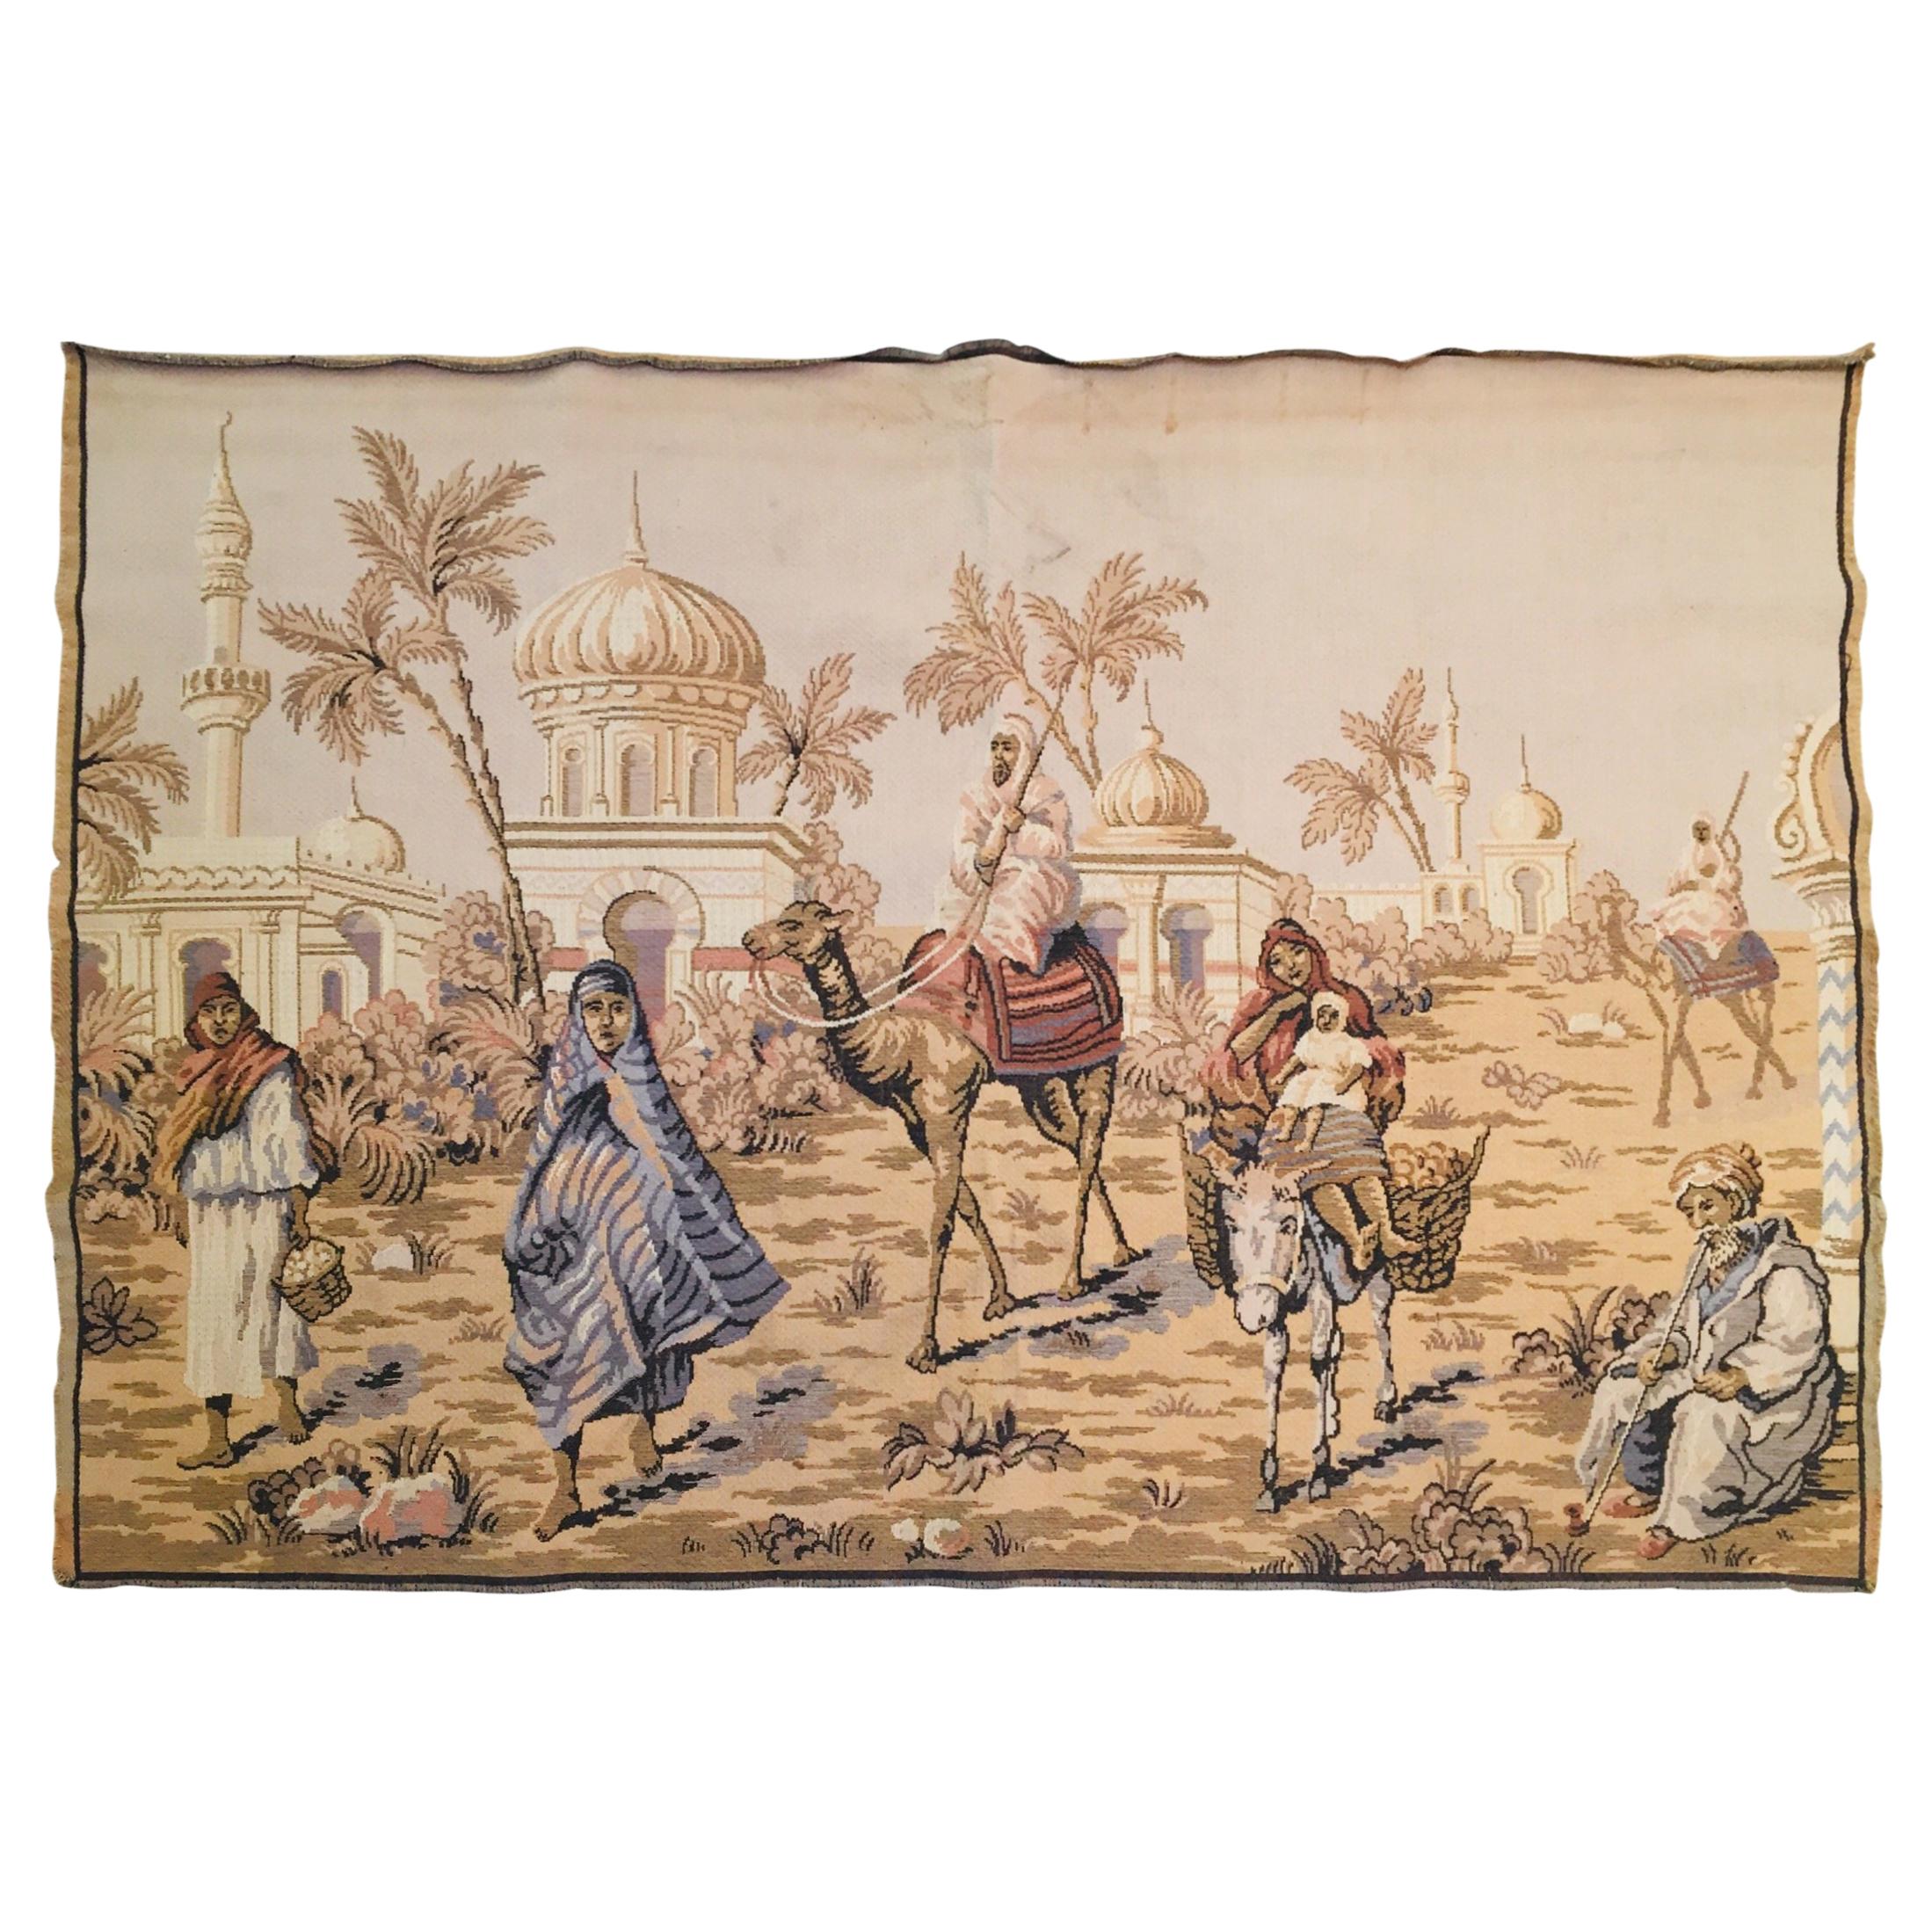 Grande tapisserie avec une scène orientaliste et une architecture mauresque du 19e siècle